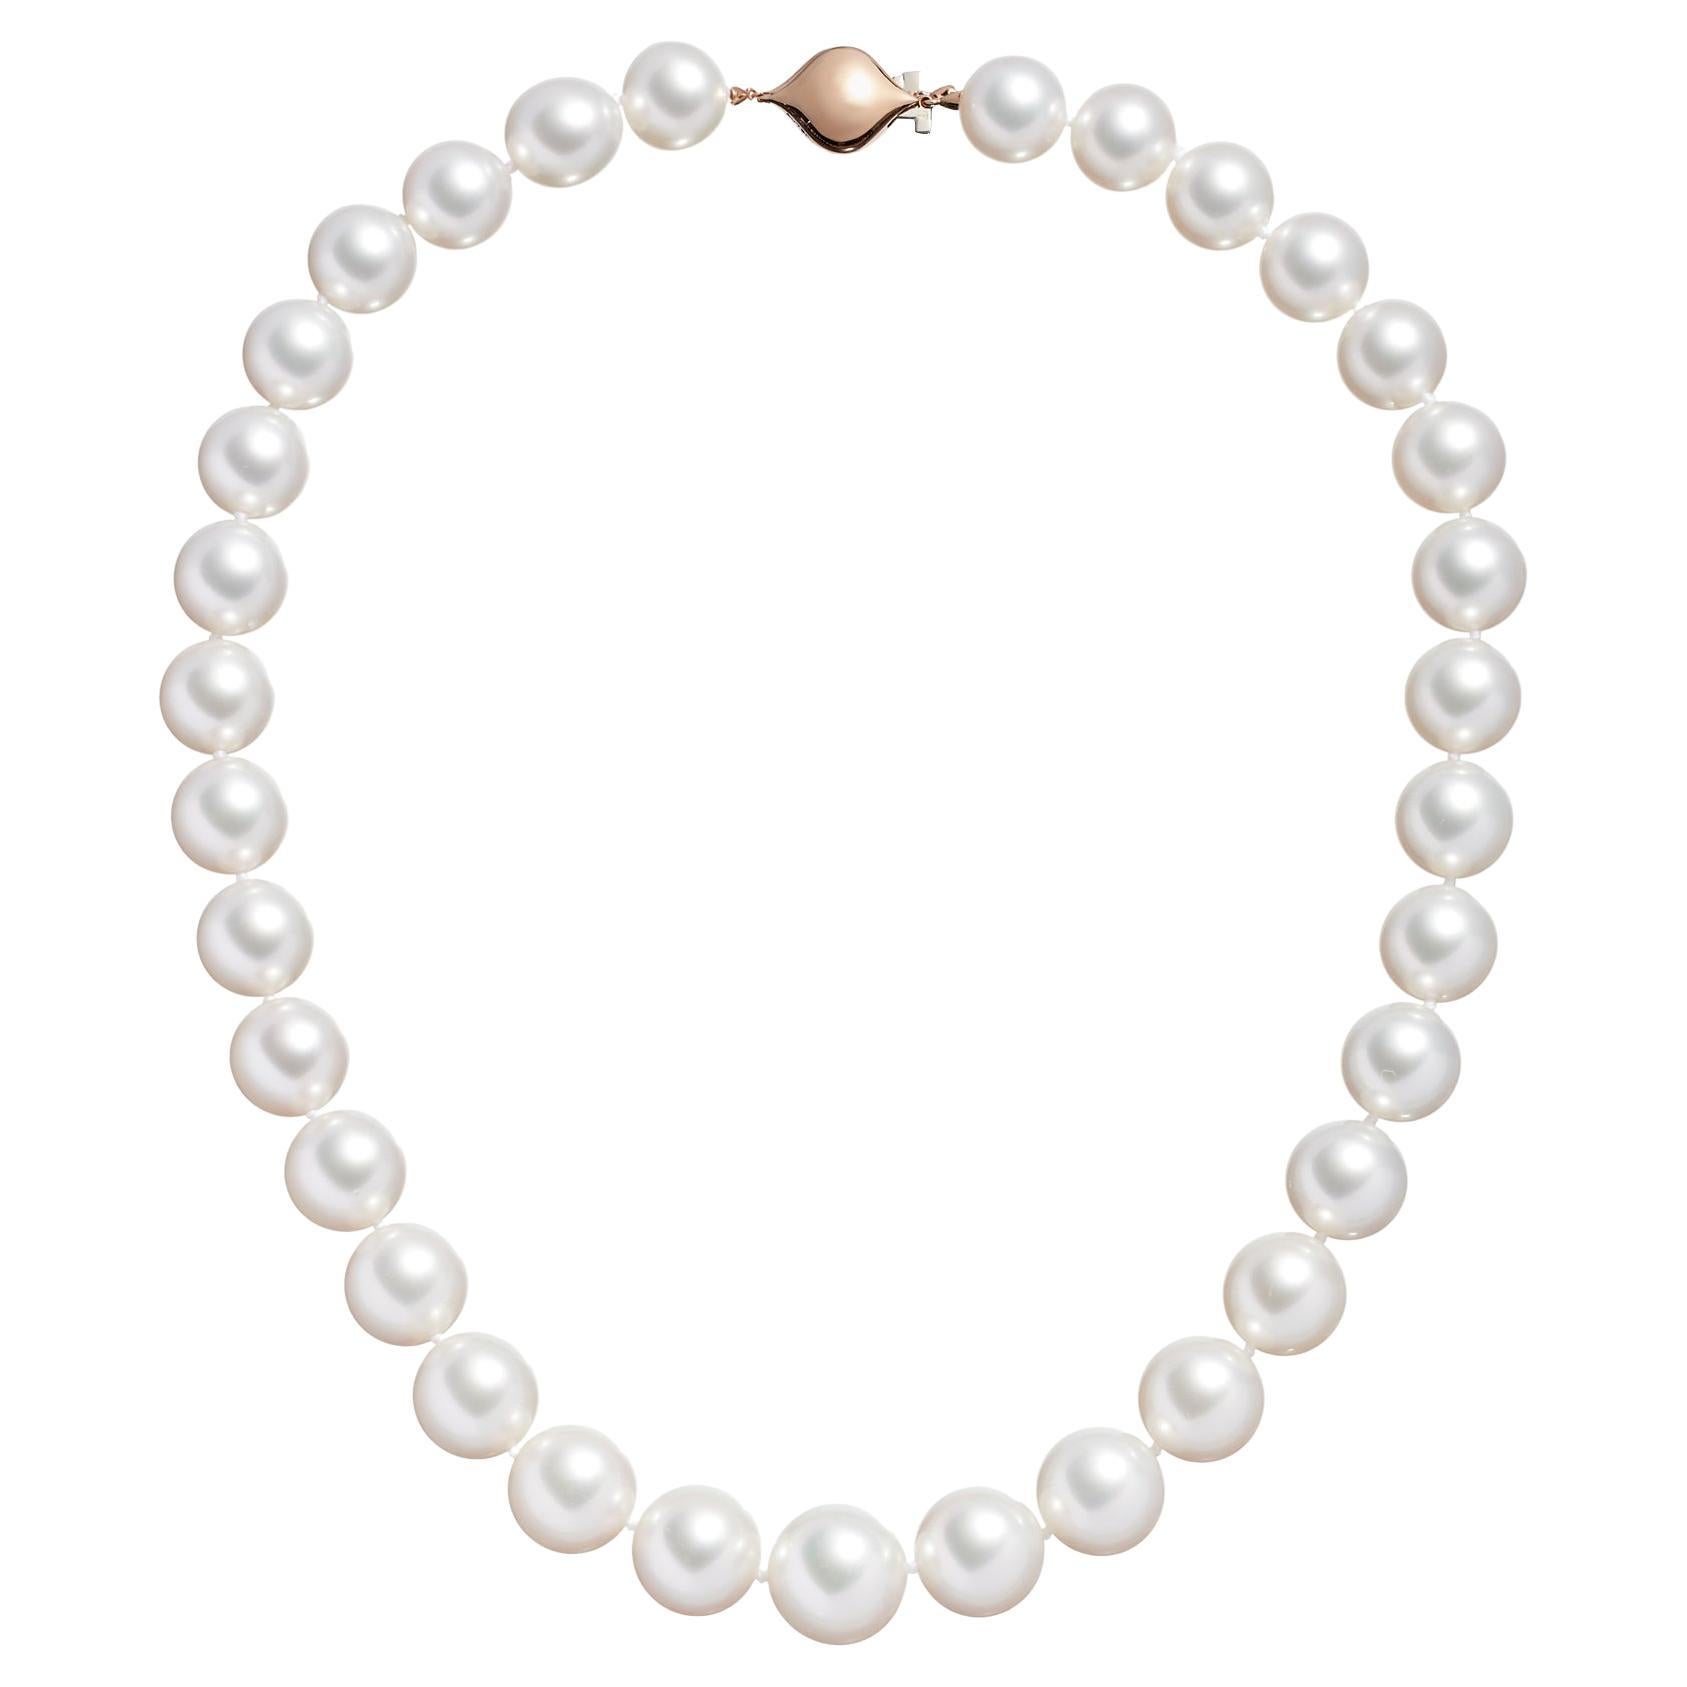 Roseate Jewelry Australische Südsee-Perlenkette aus Roségold mit runder Perlenkette